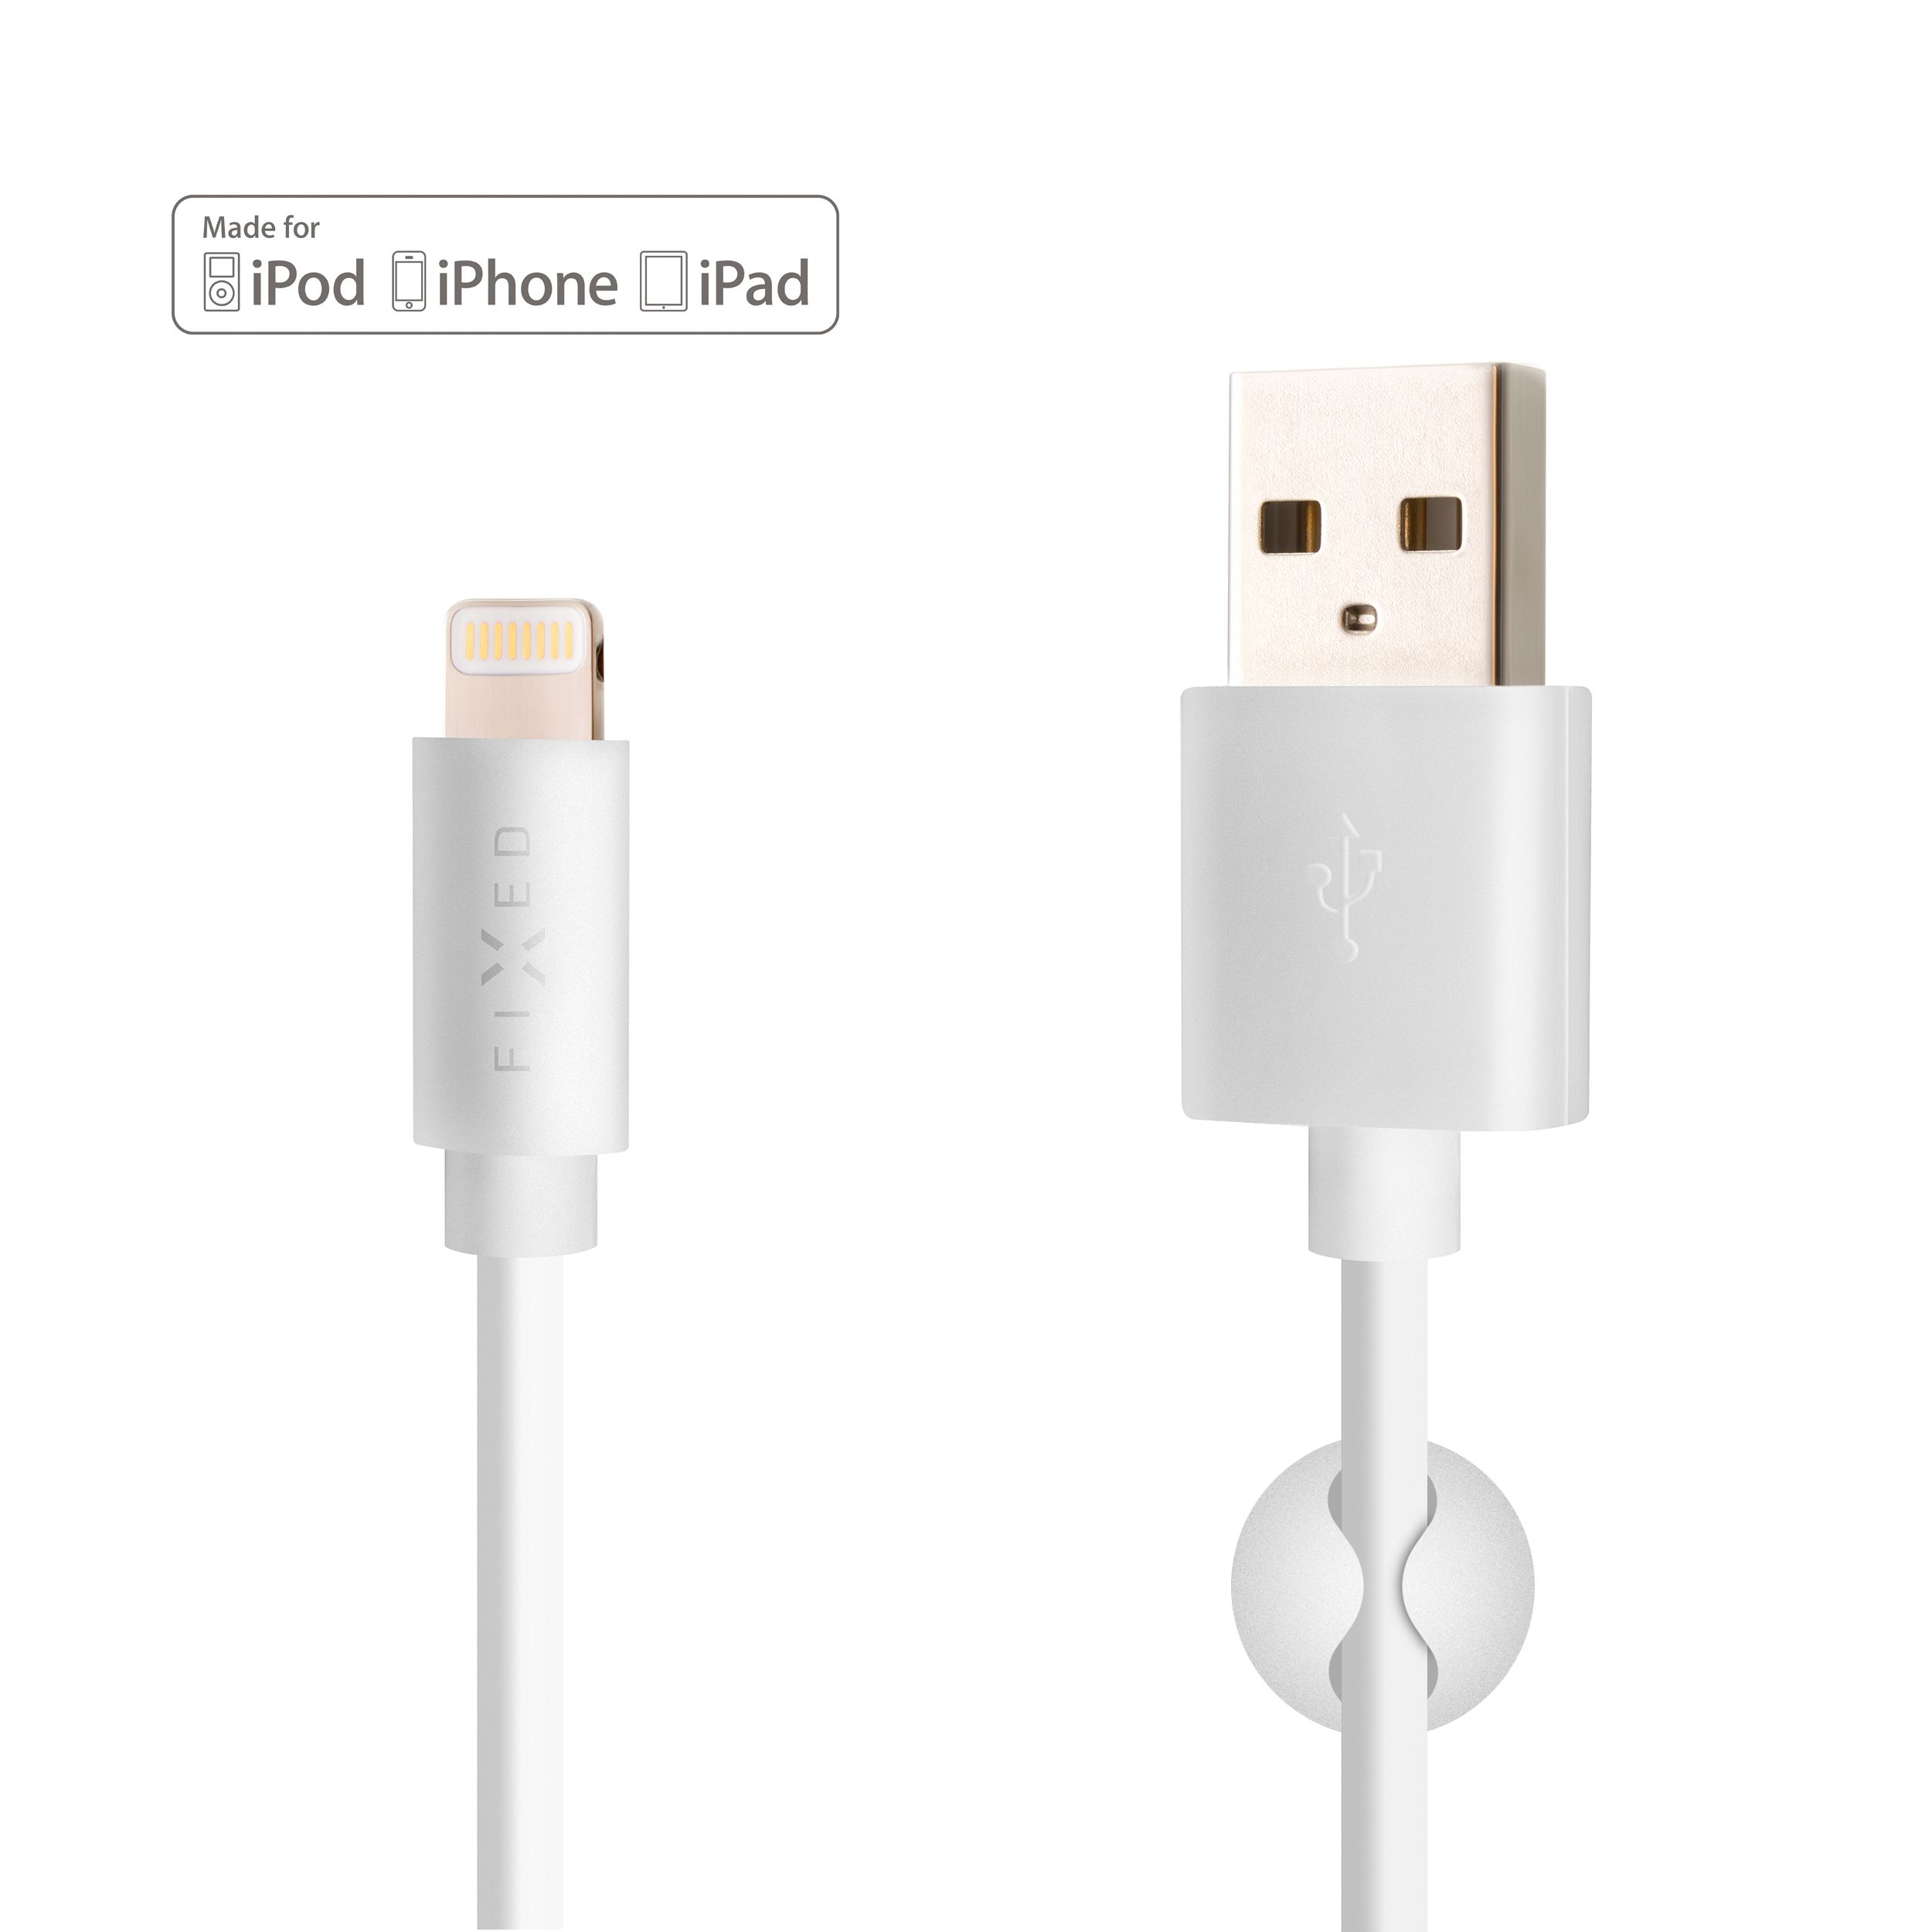 Dlouhý datový a nabíjecí kabel s konektory USB/Lightning, 2 metry, MFI certifikace, bílý